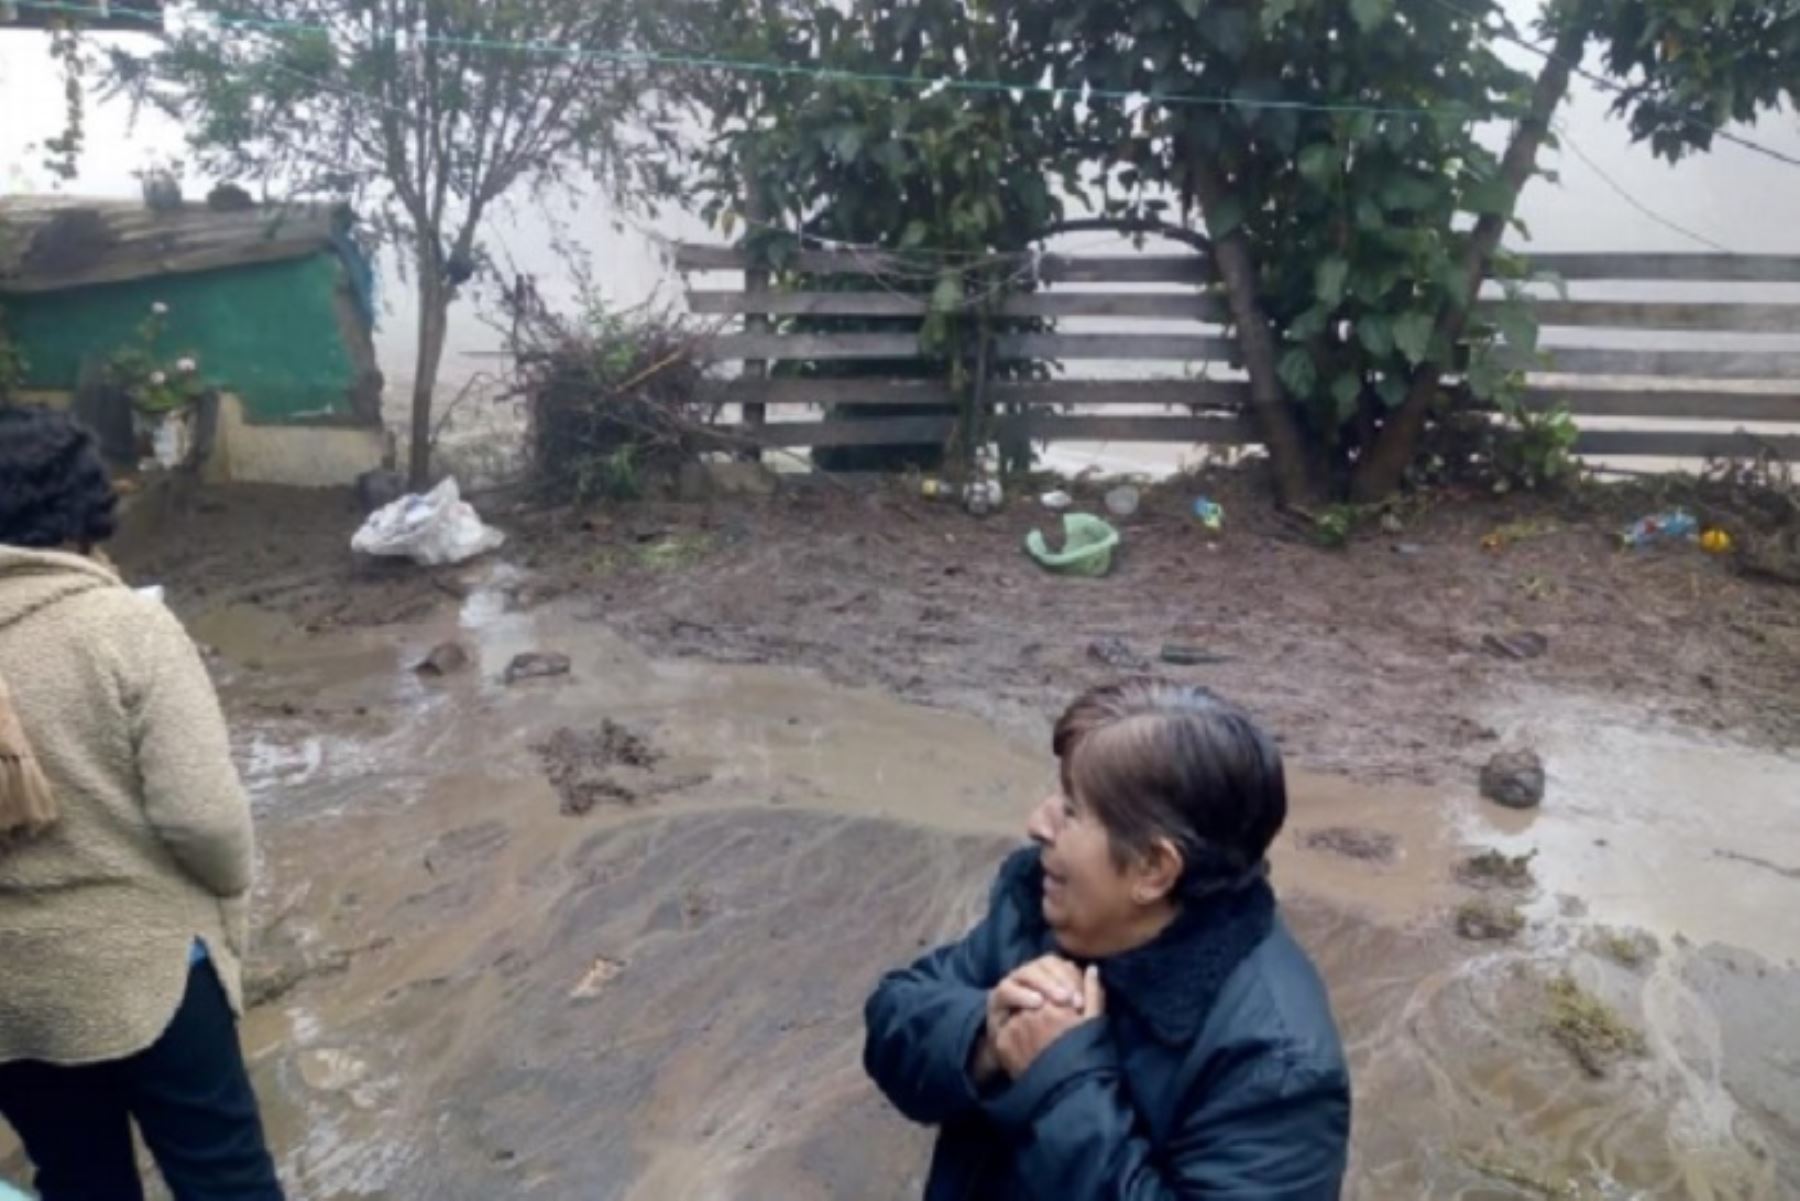 Las fuertes lluvias produjeron el colapso de la represa Tinyayoc, afectando a dos familias del anexo de Cuyo, distrito de Laramate, provincia de Lucanas, región Ayacucho; cuyas viviendas resultaron inundadas al igual que 10 hectáreas de cultivos.